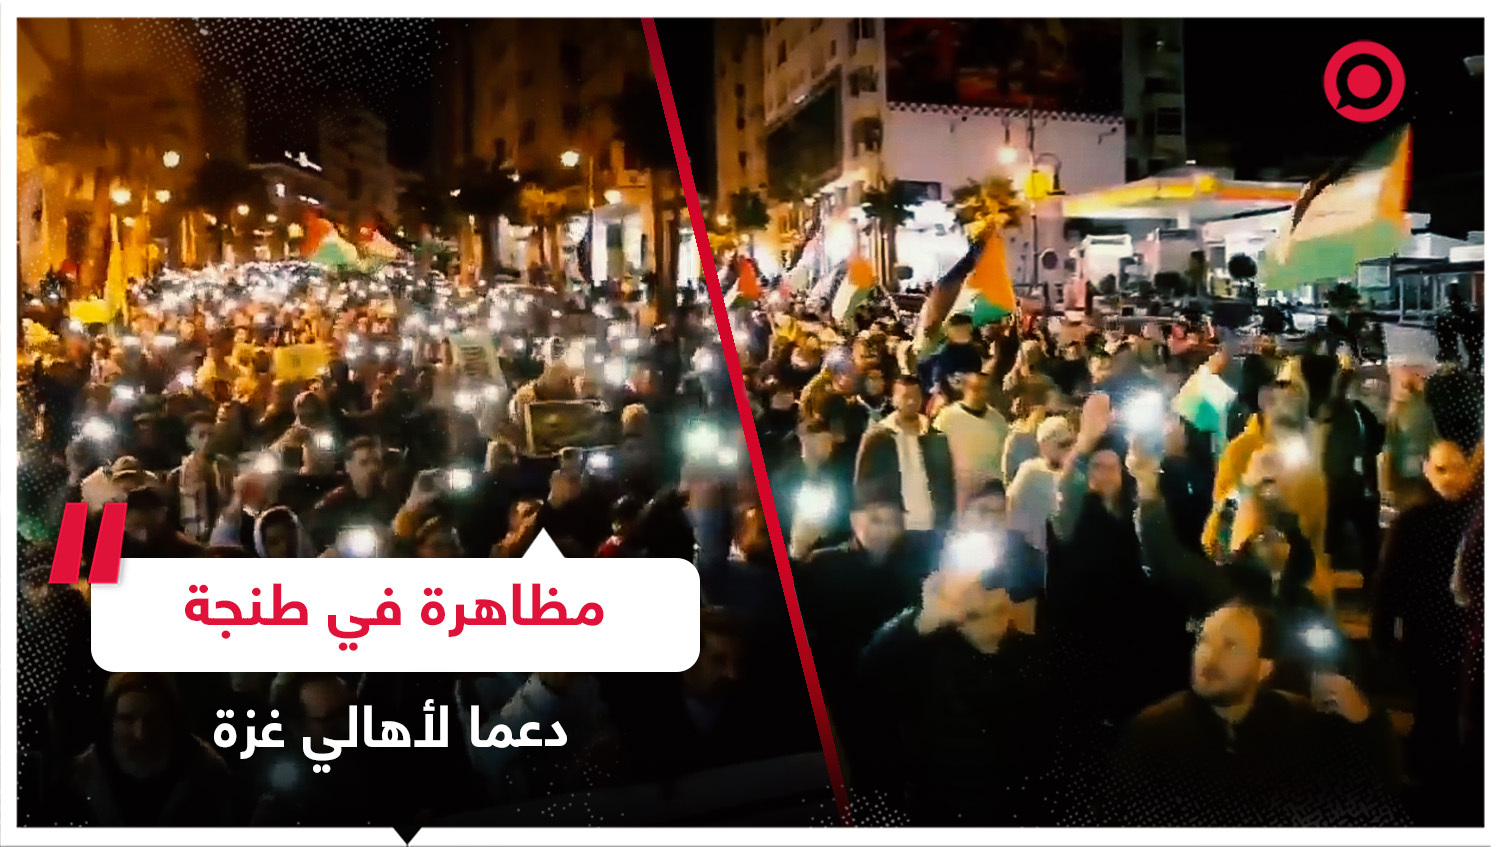 مظاهرة حاشدة في مدينة طنجة المغربية دعما للفلسطينيين في قطاع غزة